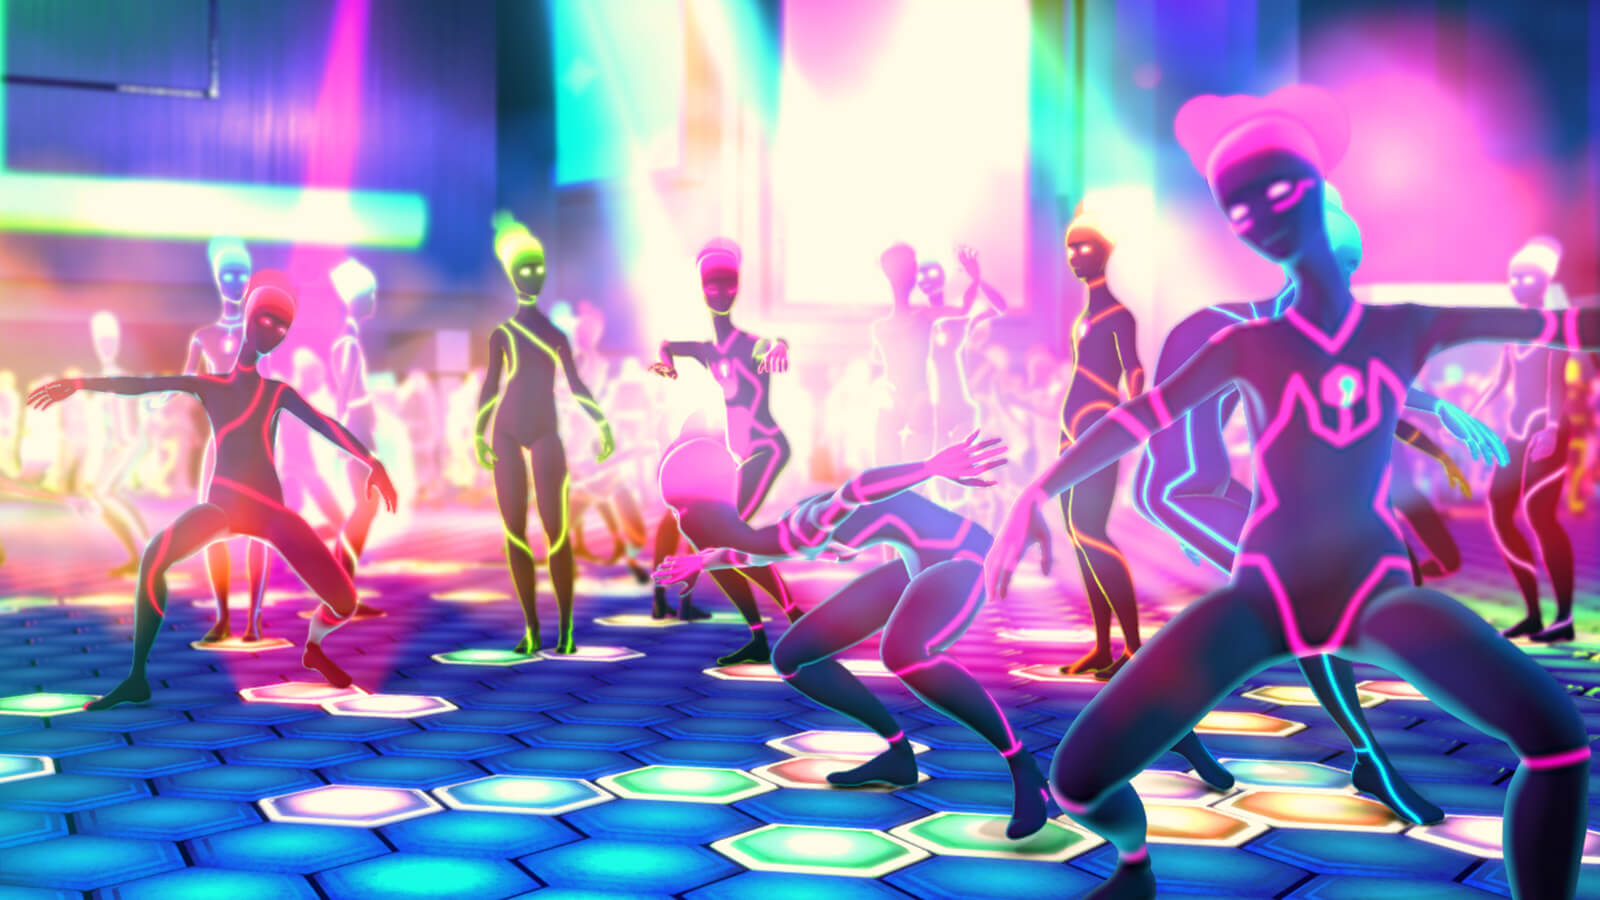 Figuras humanoides se mueven y bailan en una discoteca impregnada de colores neón.